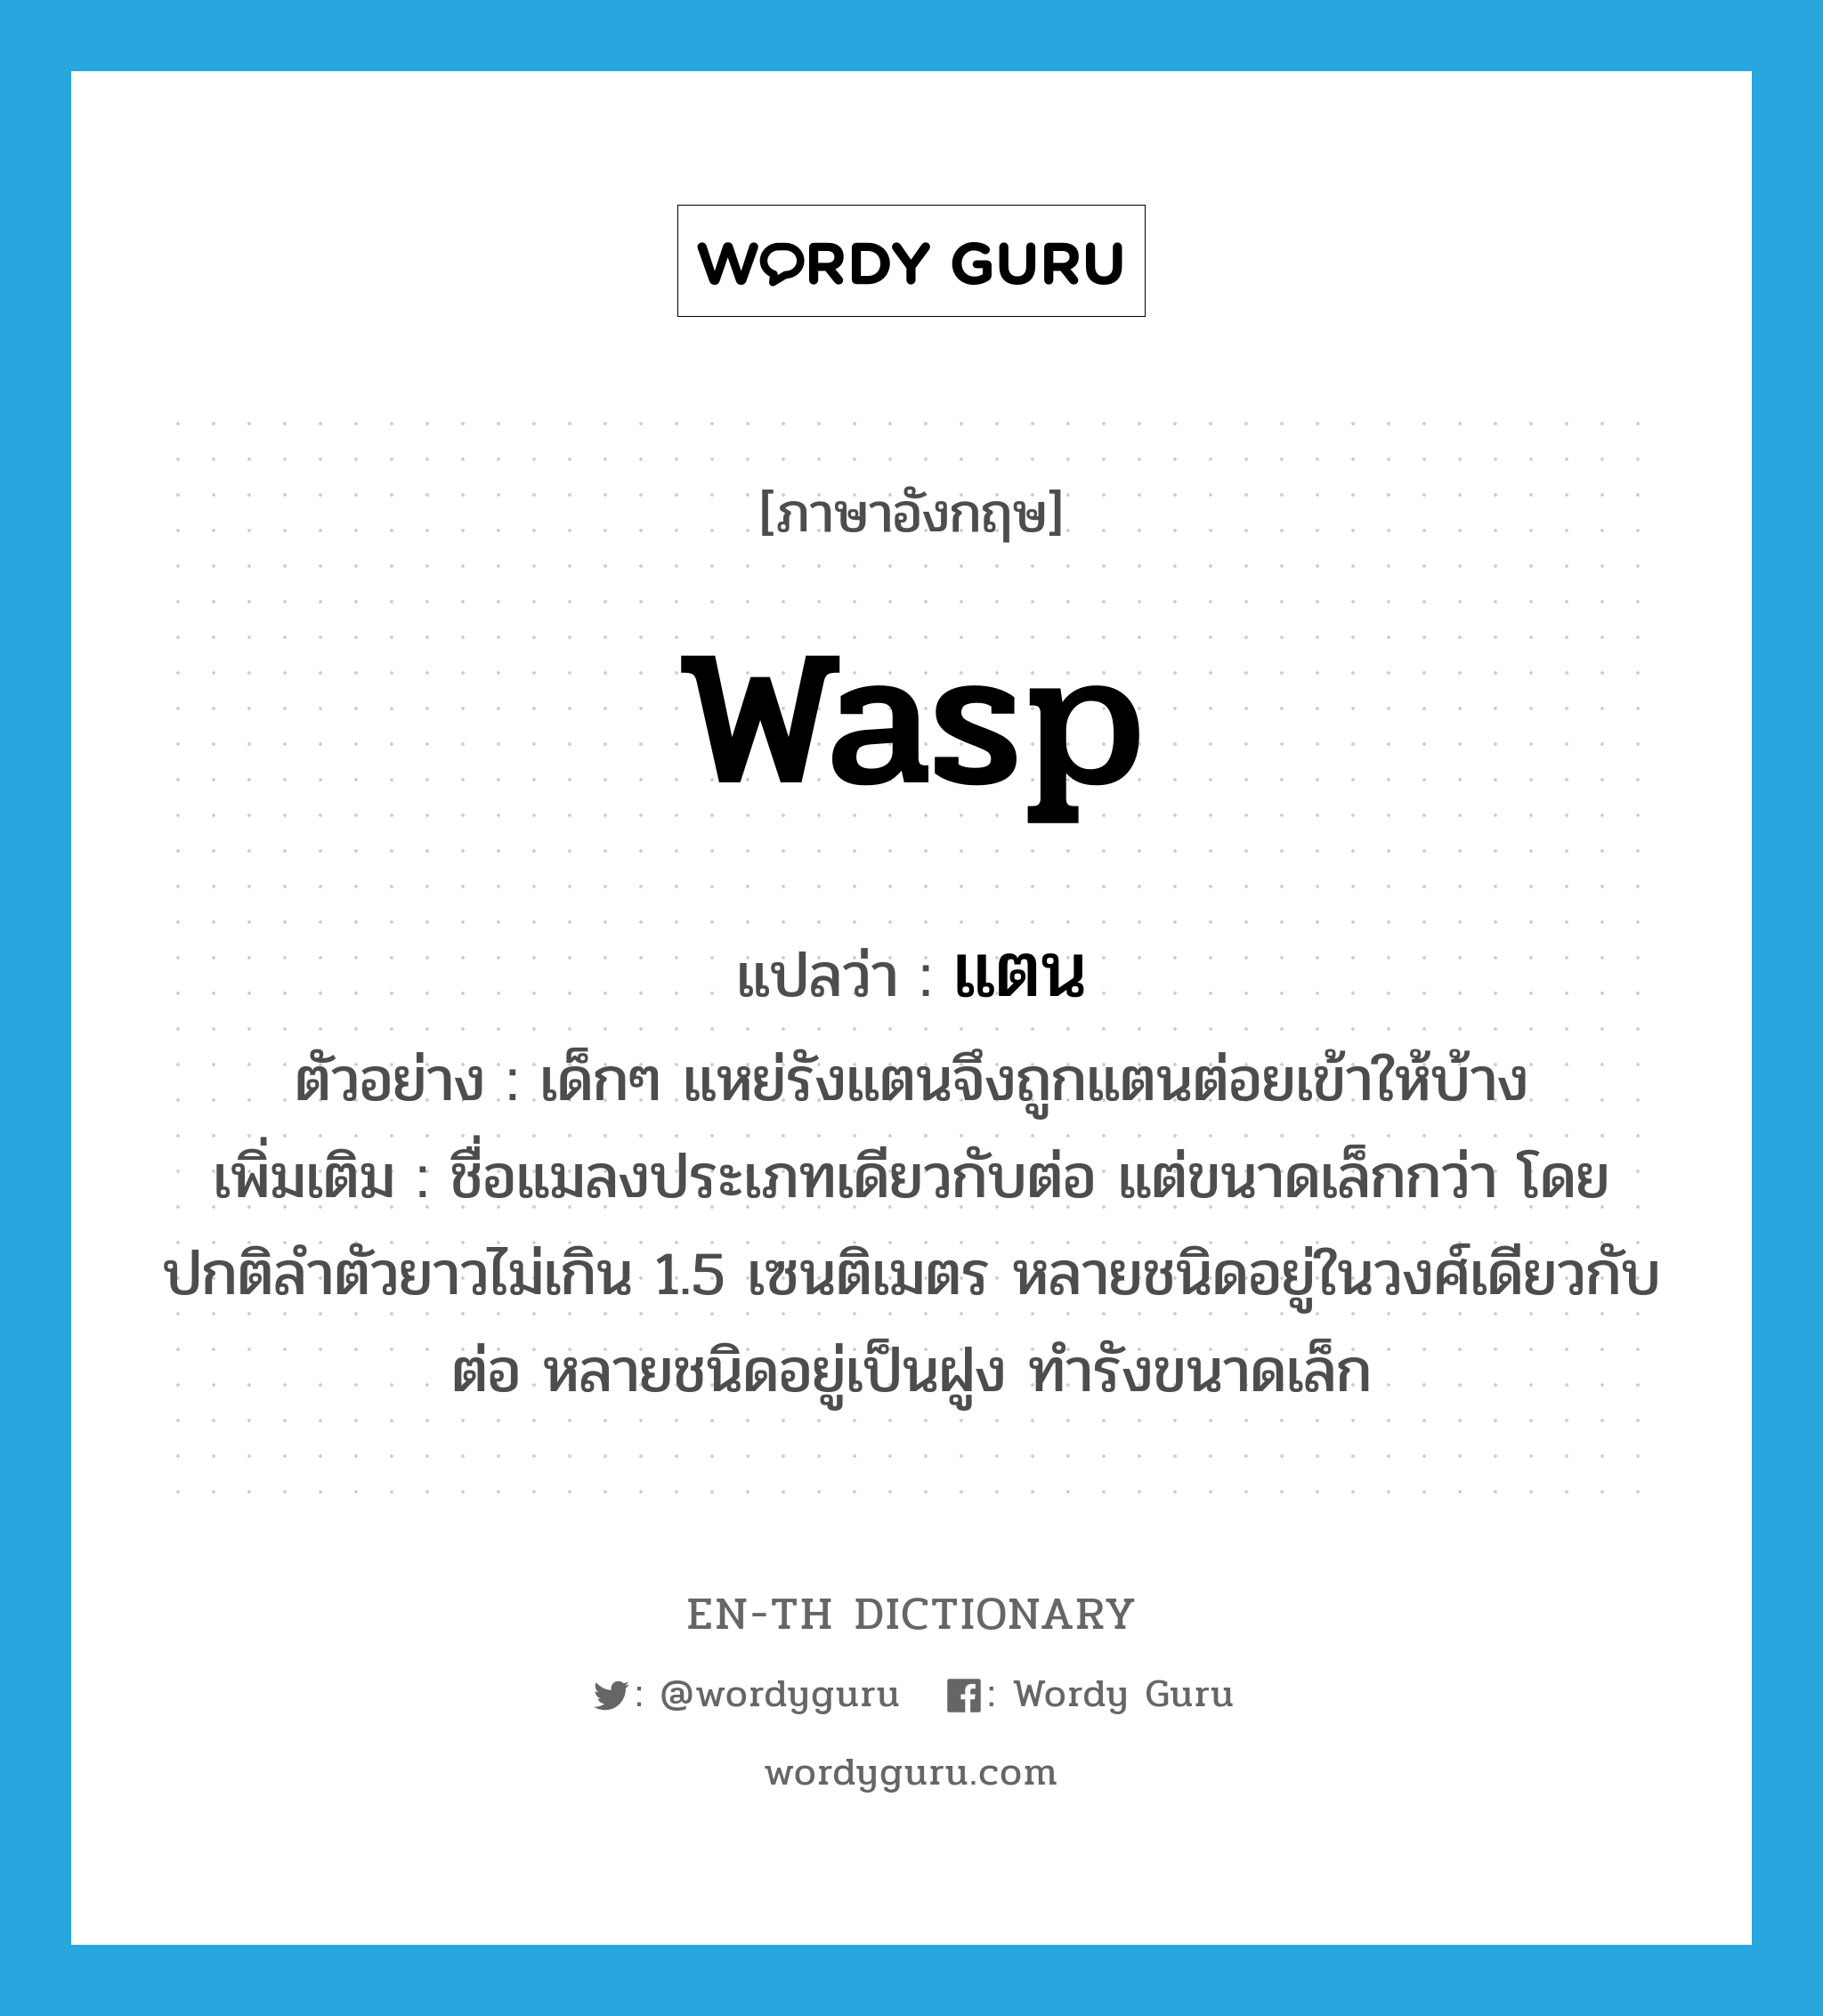 WASP แปลว่า?, คำศัพท์ภาษาอังกฤษ wasp แปลว่า แตน ประเภท N ตัวอย่าง เด็กๆ แหย่รังแตนจึงถูกแตนต่อยเข้าให้บ้าง เพิ่มเติม ชื่อแมลงประเภทเดียวกับต่อ แต่ขนาดเล็กกว่า โดยปกติลำตัวยาวไม่เกิน 1.5 เซนติเมตร หลายชนิดอยู่ในวงศ์เดียวกับต่อ หลายชนิดอยู่เป็นฝูง ทำรังขนาดเล็ก หมวด N